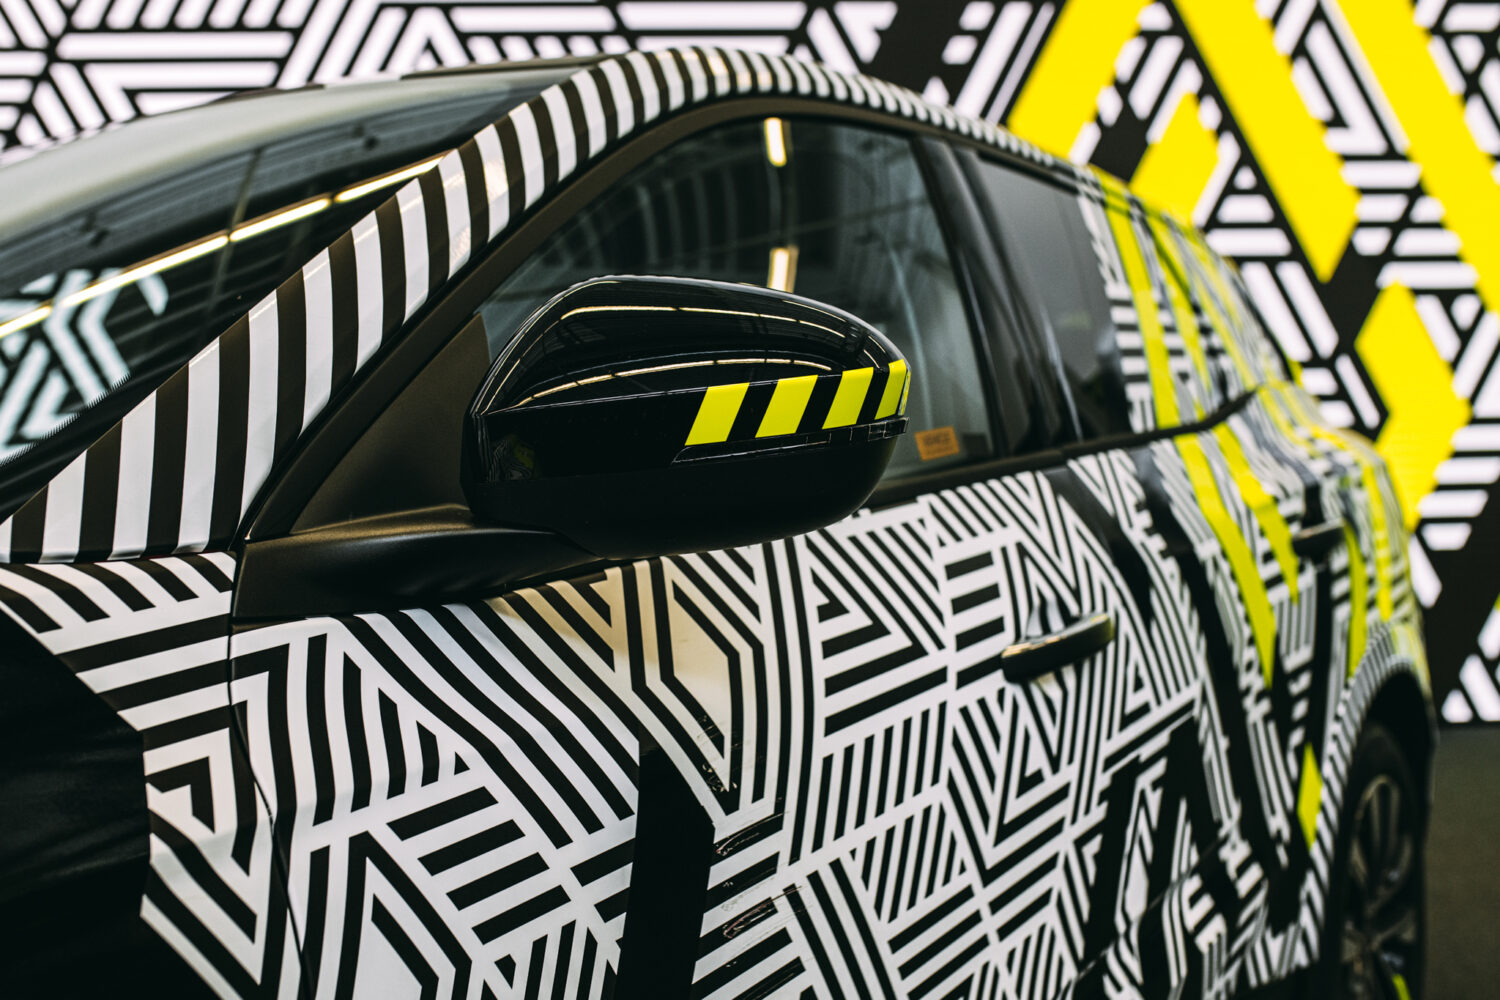 2022 - Story Nouveau Renault Austral : cacher le style avec style